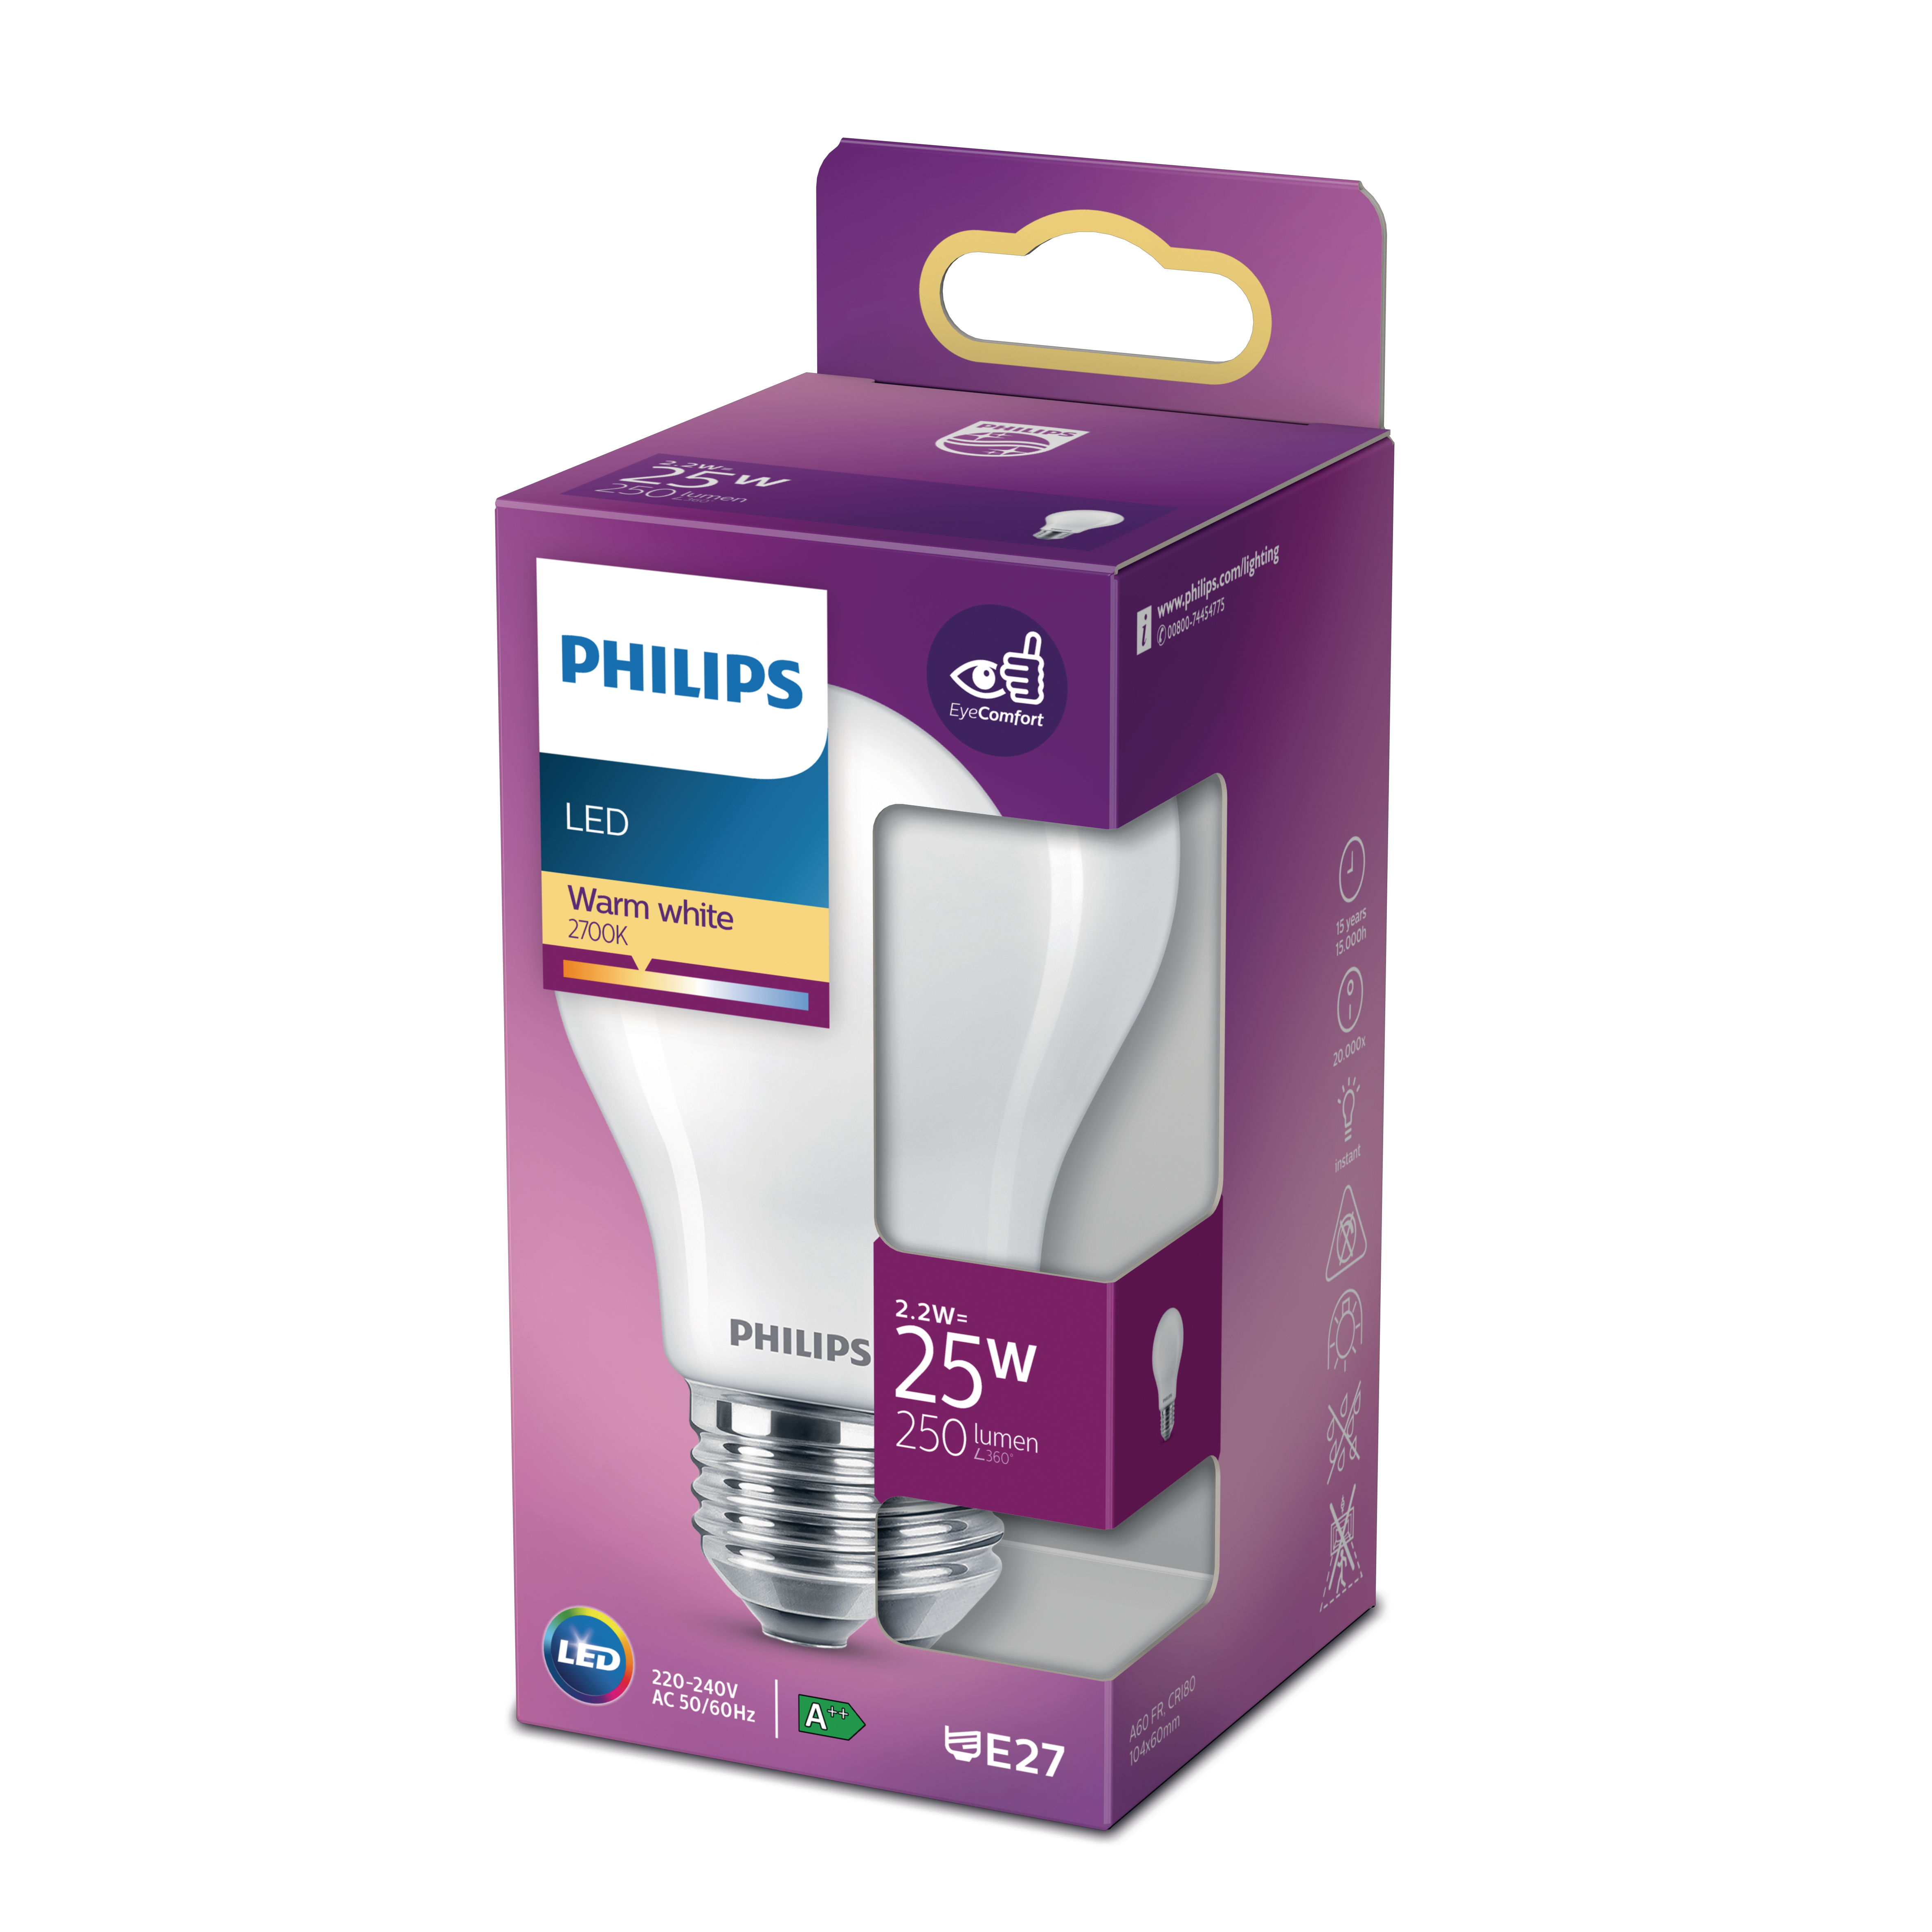 PHILIPS Lampe ersetzt LEDclassic Lampe warmweiß 25W LED